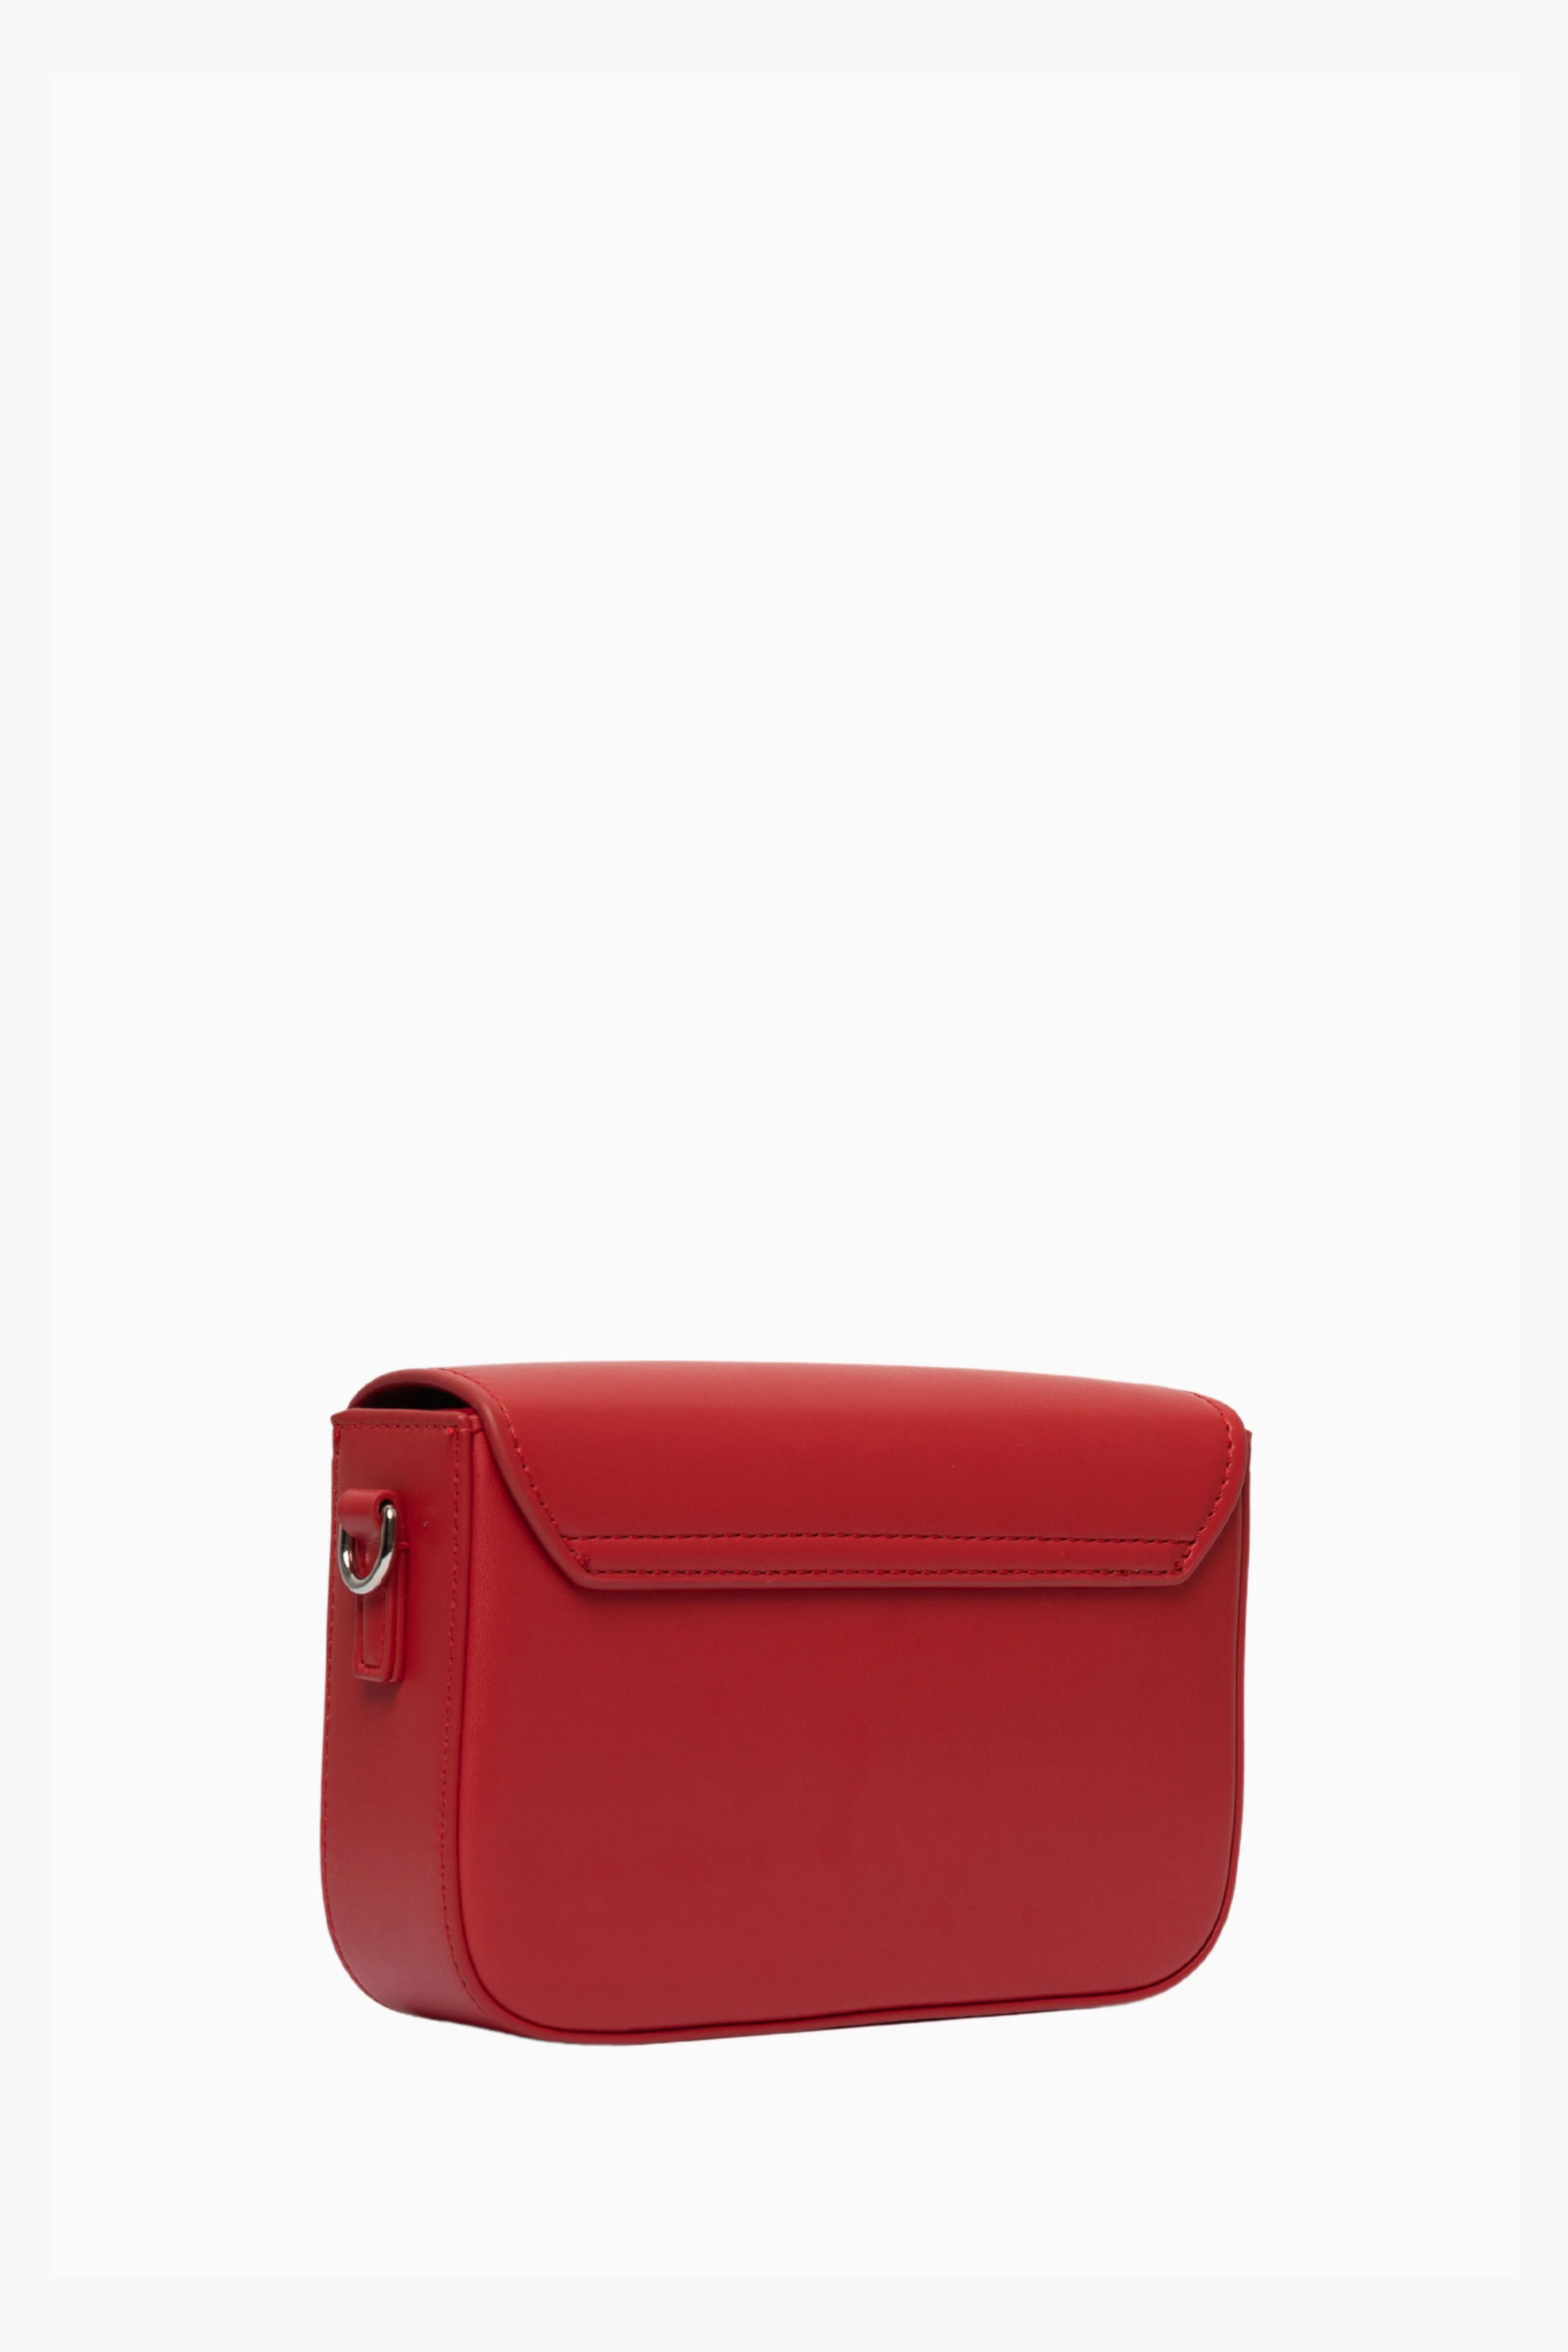 Red Pantone Bag